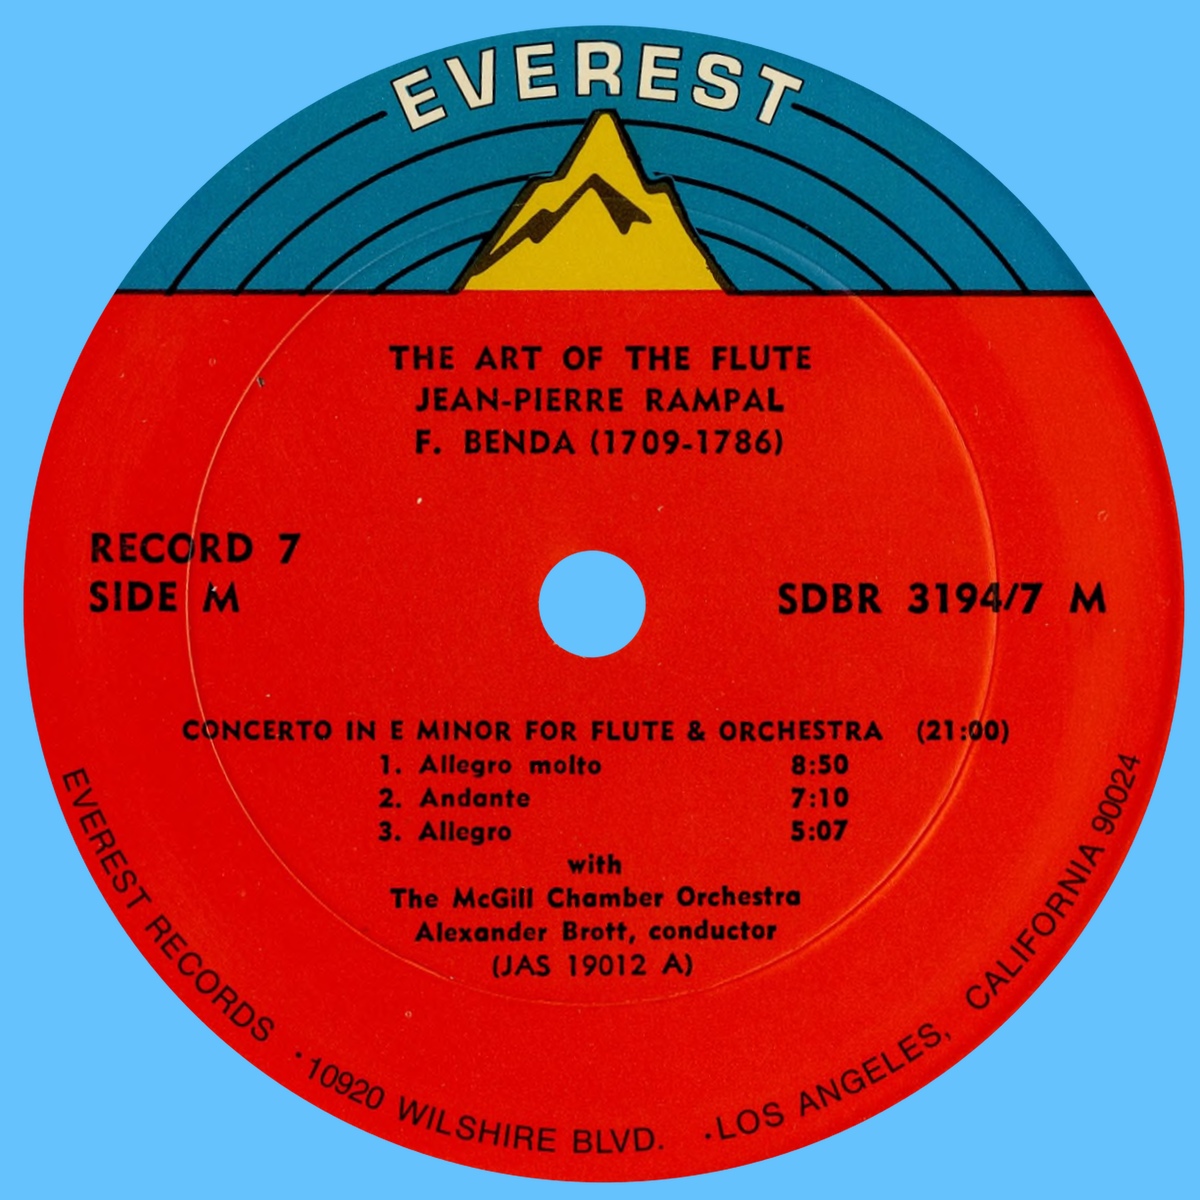 Étiquette recto du 7e disque du coffret Everest 3194-7